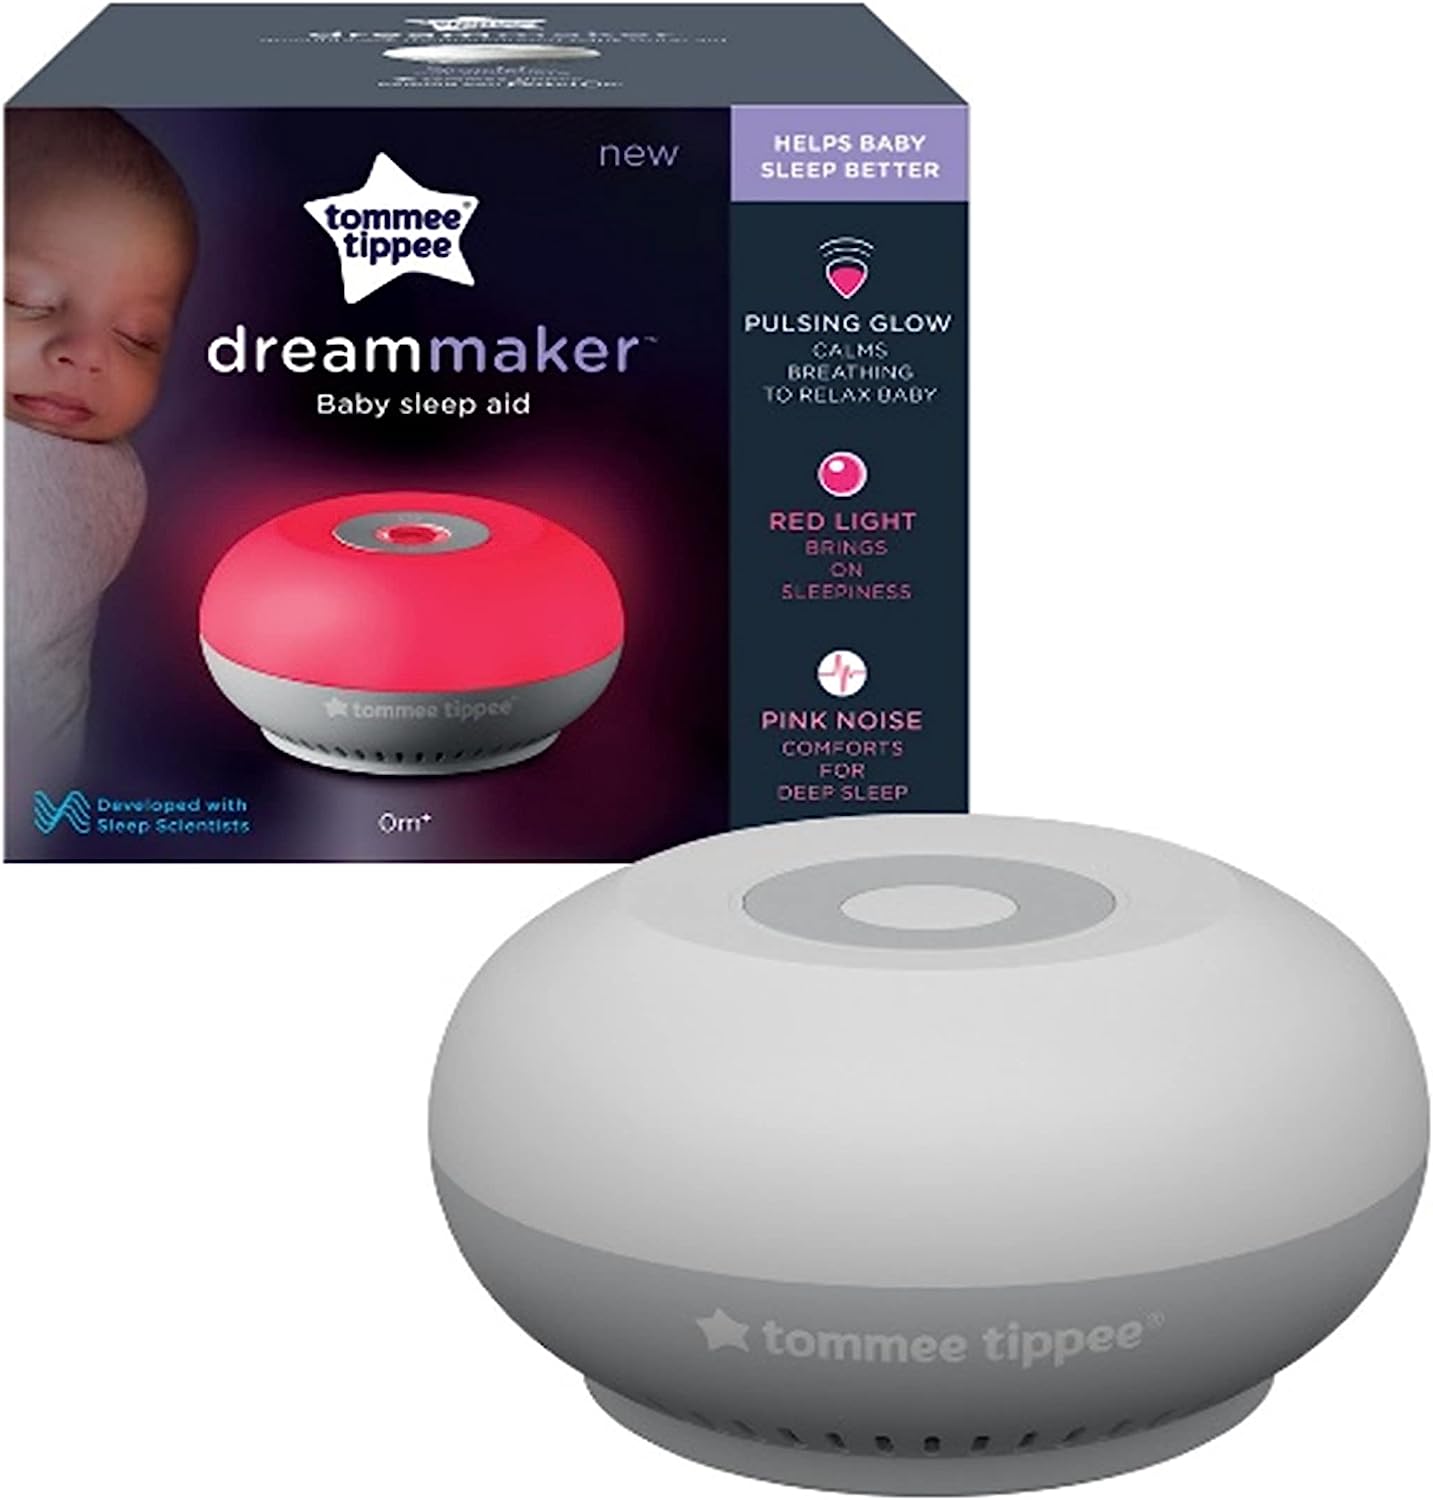 Tommee Tippee Dreammaker Baby Sleep Aid